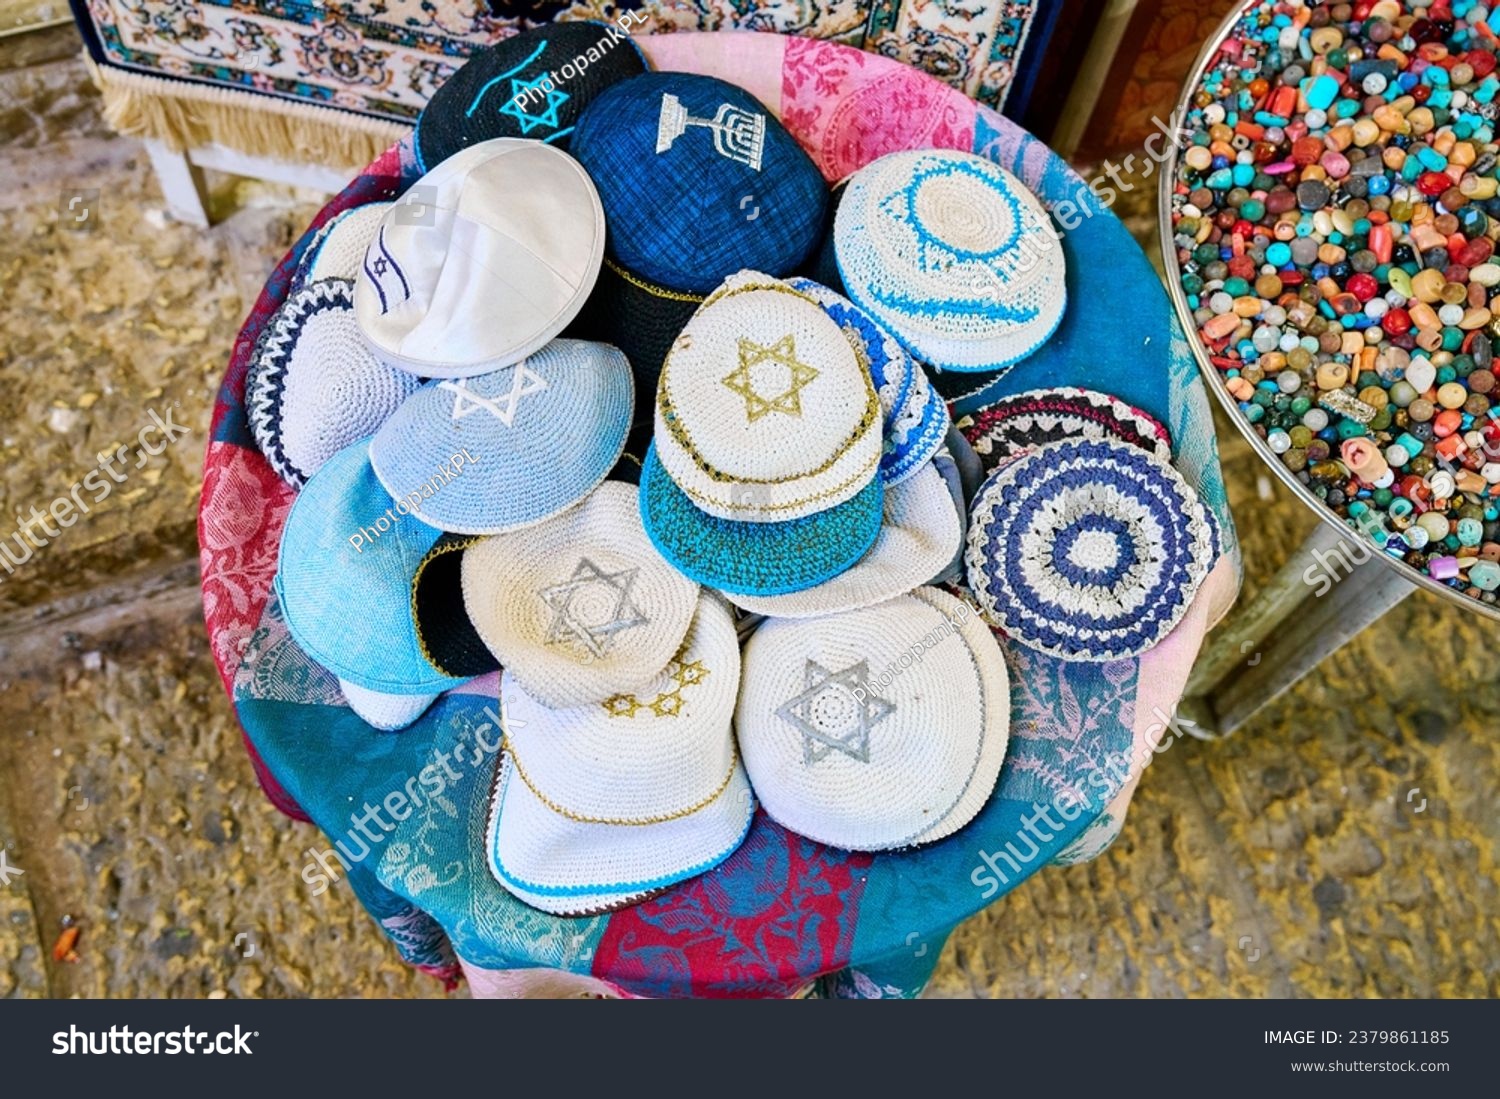 Jewish headgear at a stall in Jerusalem                                #2379861185